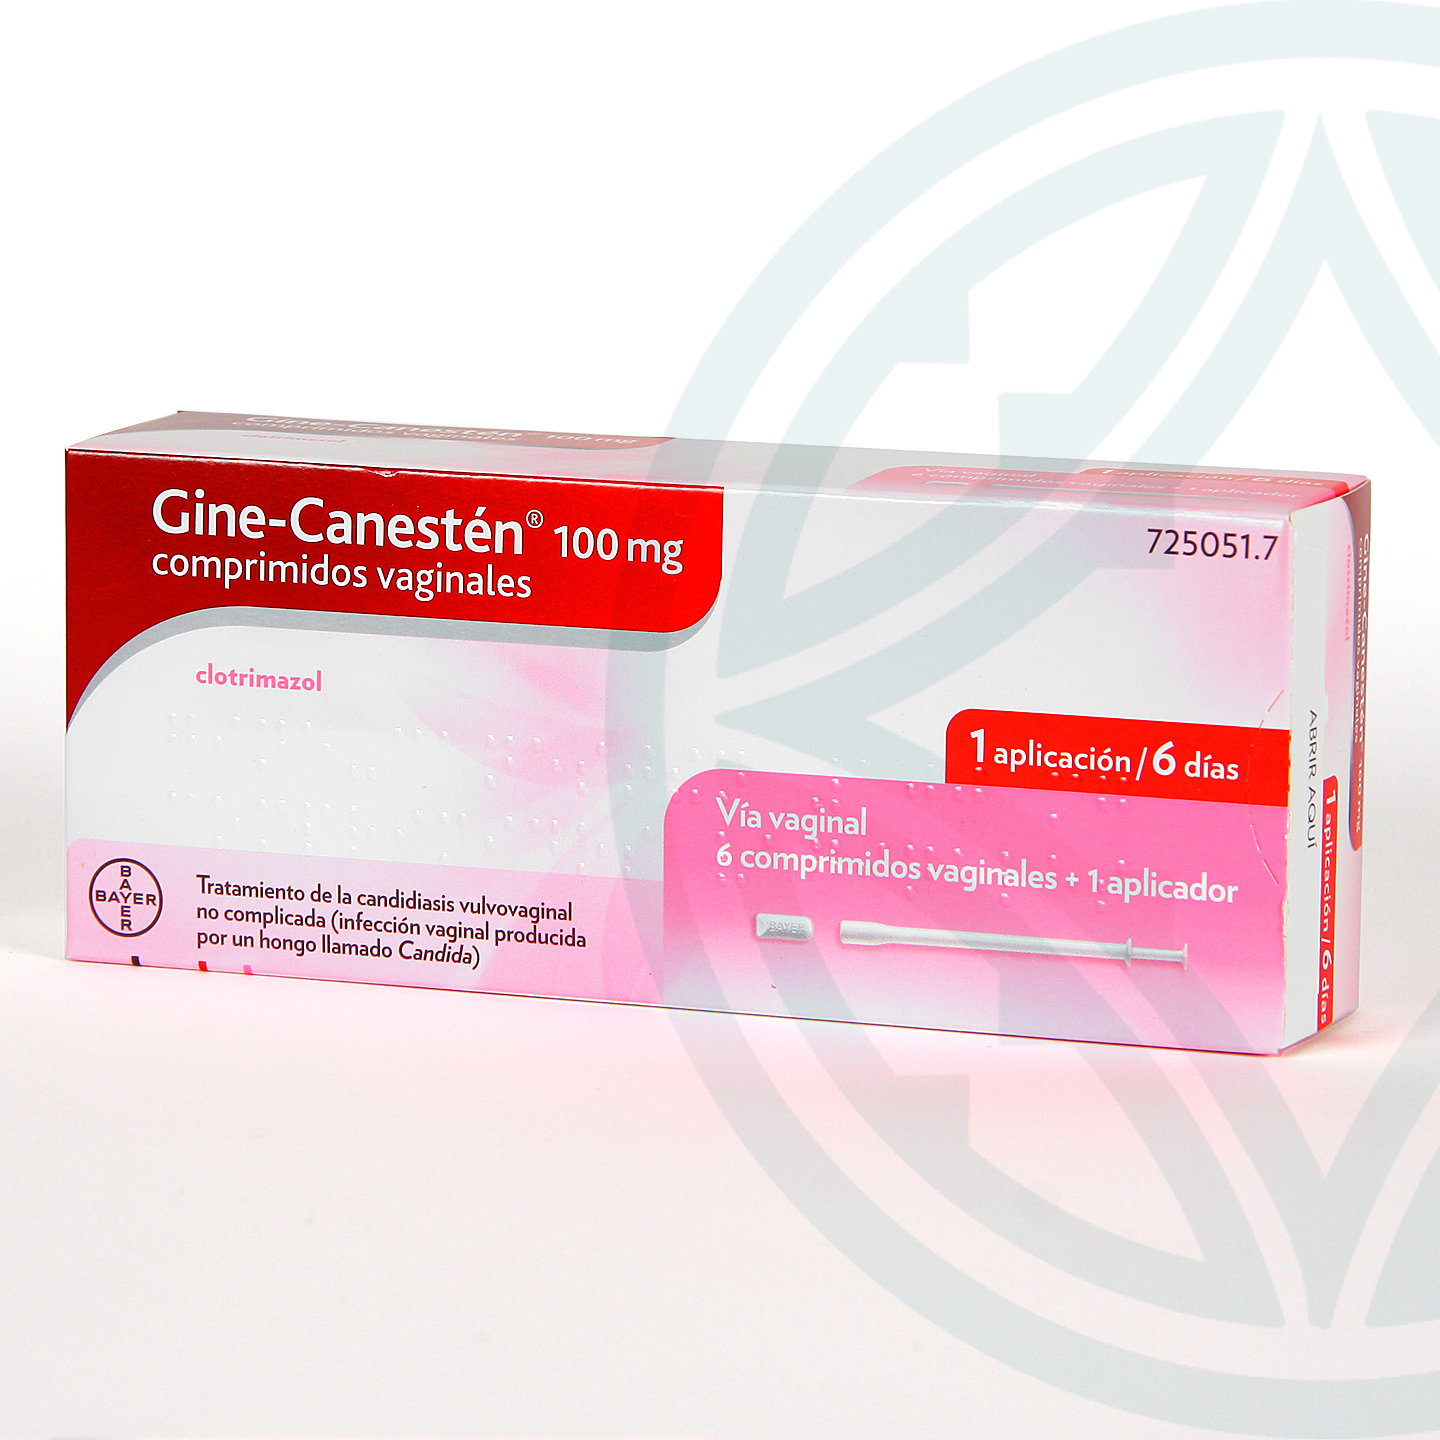 Preguntas sobre Gine-Canestén 100 mg 6 comprimidos vaginales | Bayer |  Farmacia Jiménez